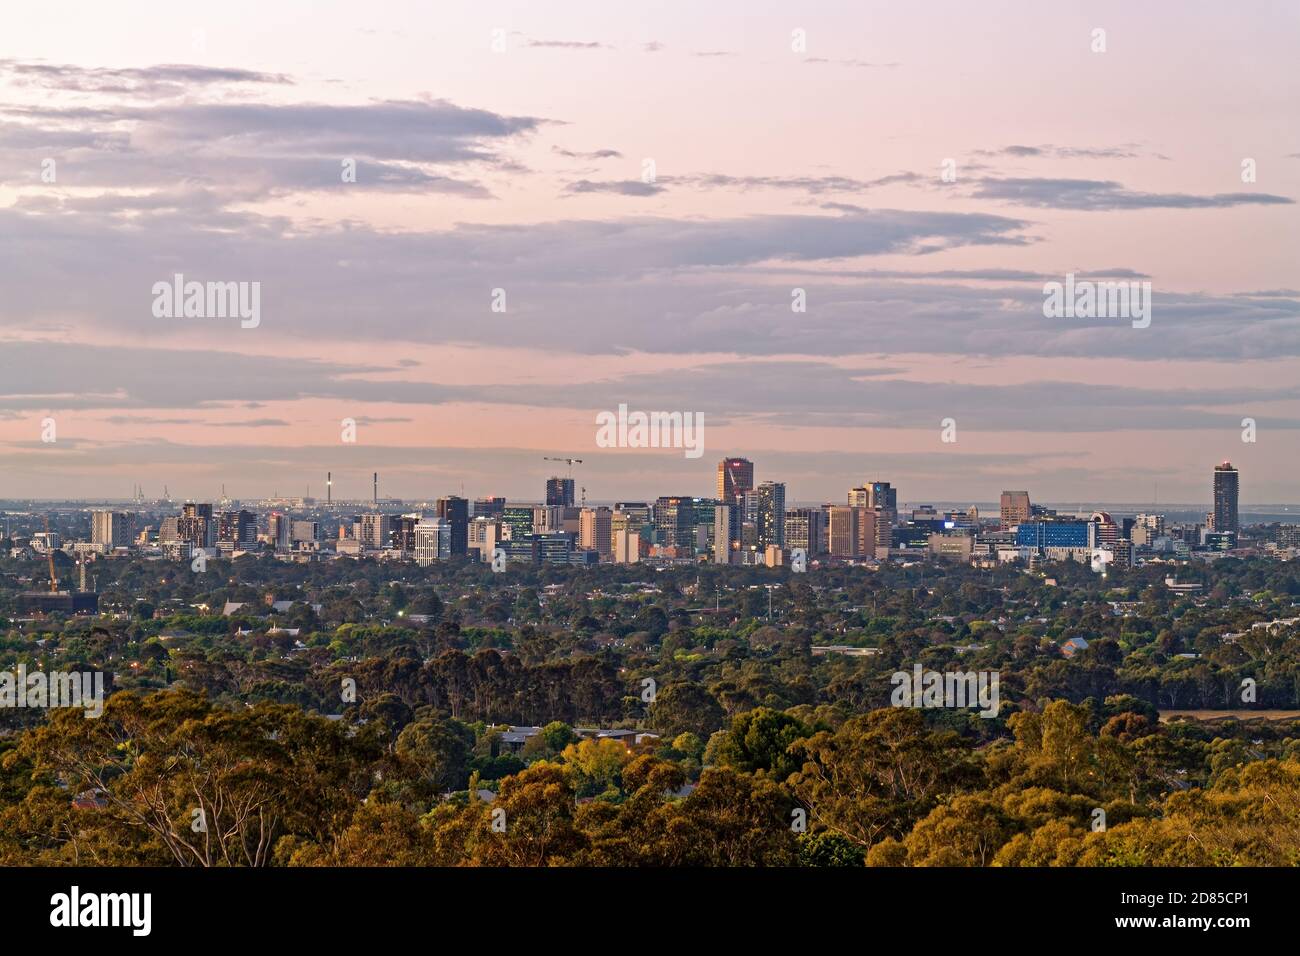 Adelaide, South Australia - 27. Oktober 2020: Spektakuläre Aussicht auf Adelaide City Skyline in der Abenddämmerung von den Hügeln aus gesehen Stockfoto